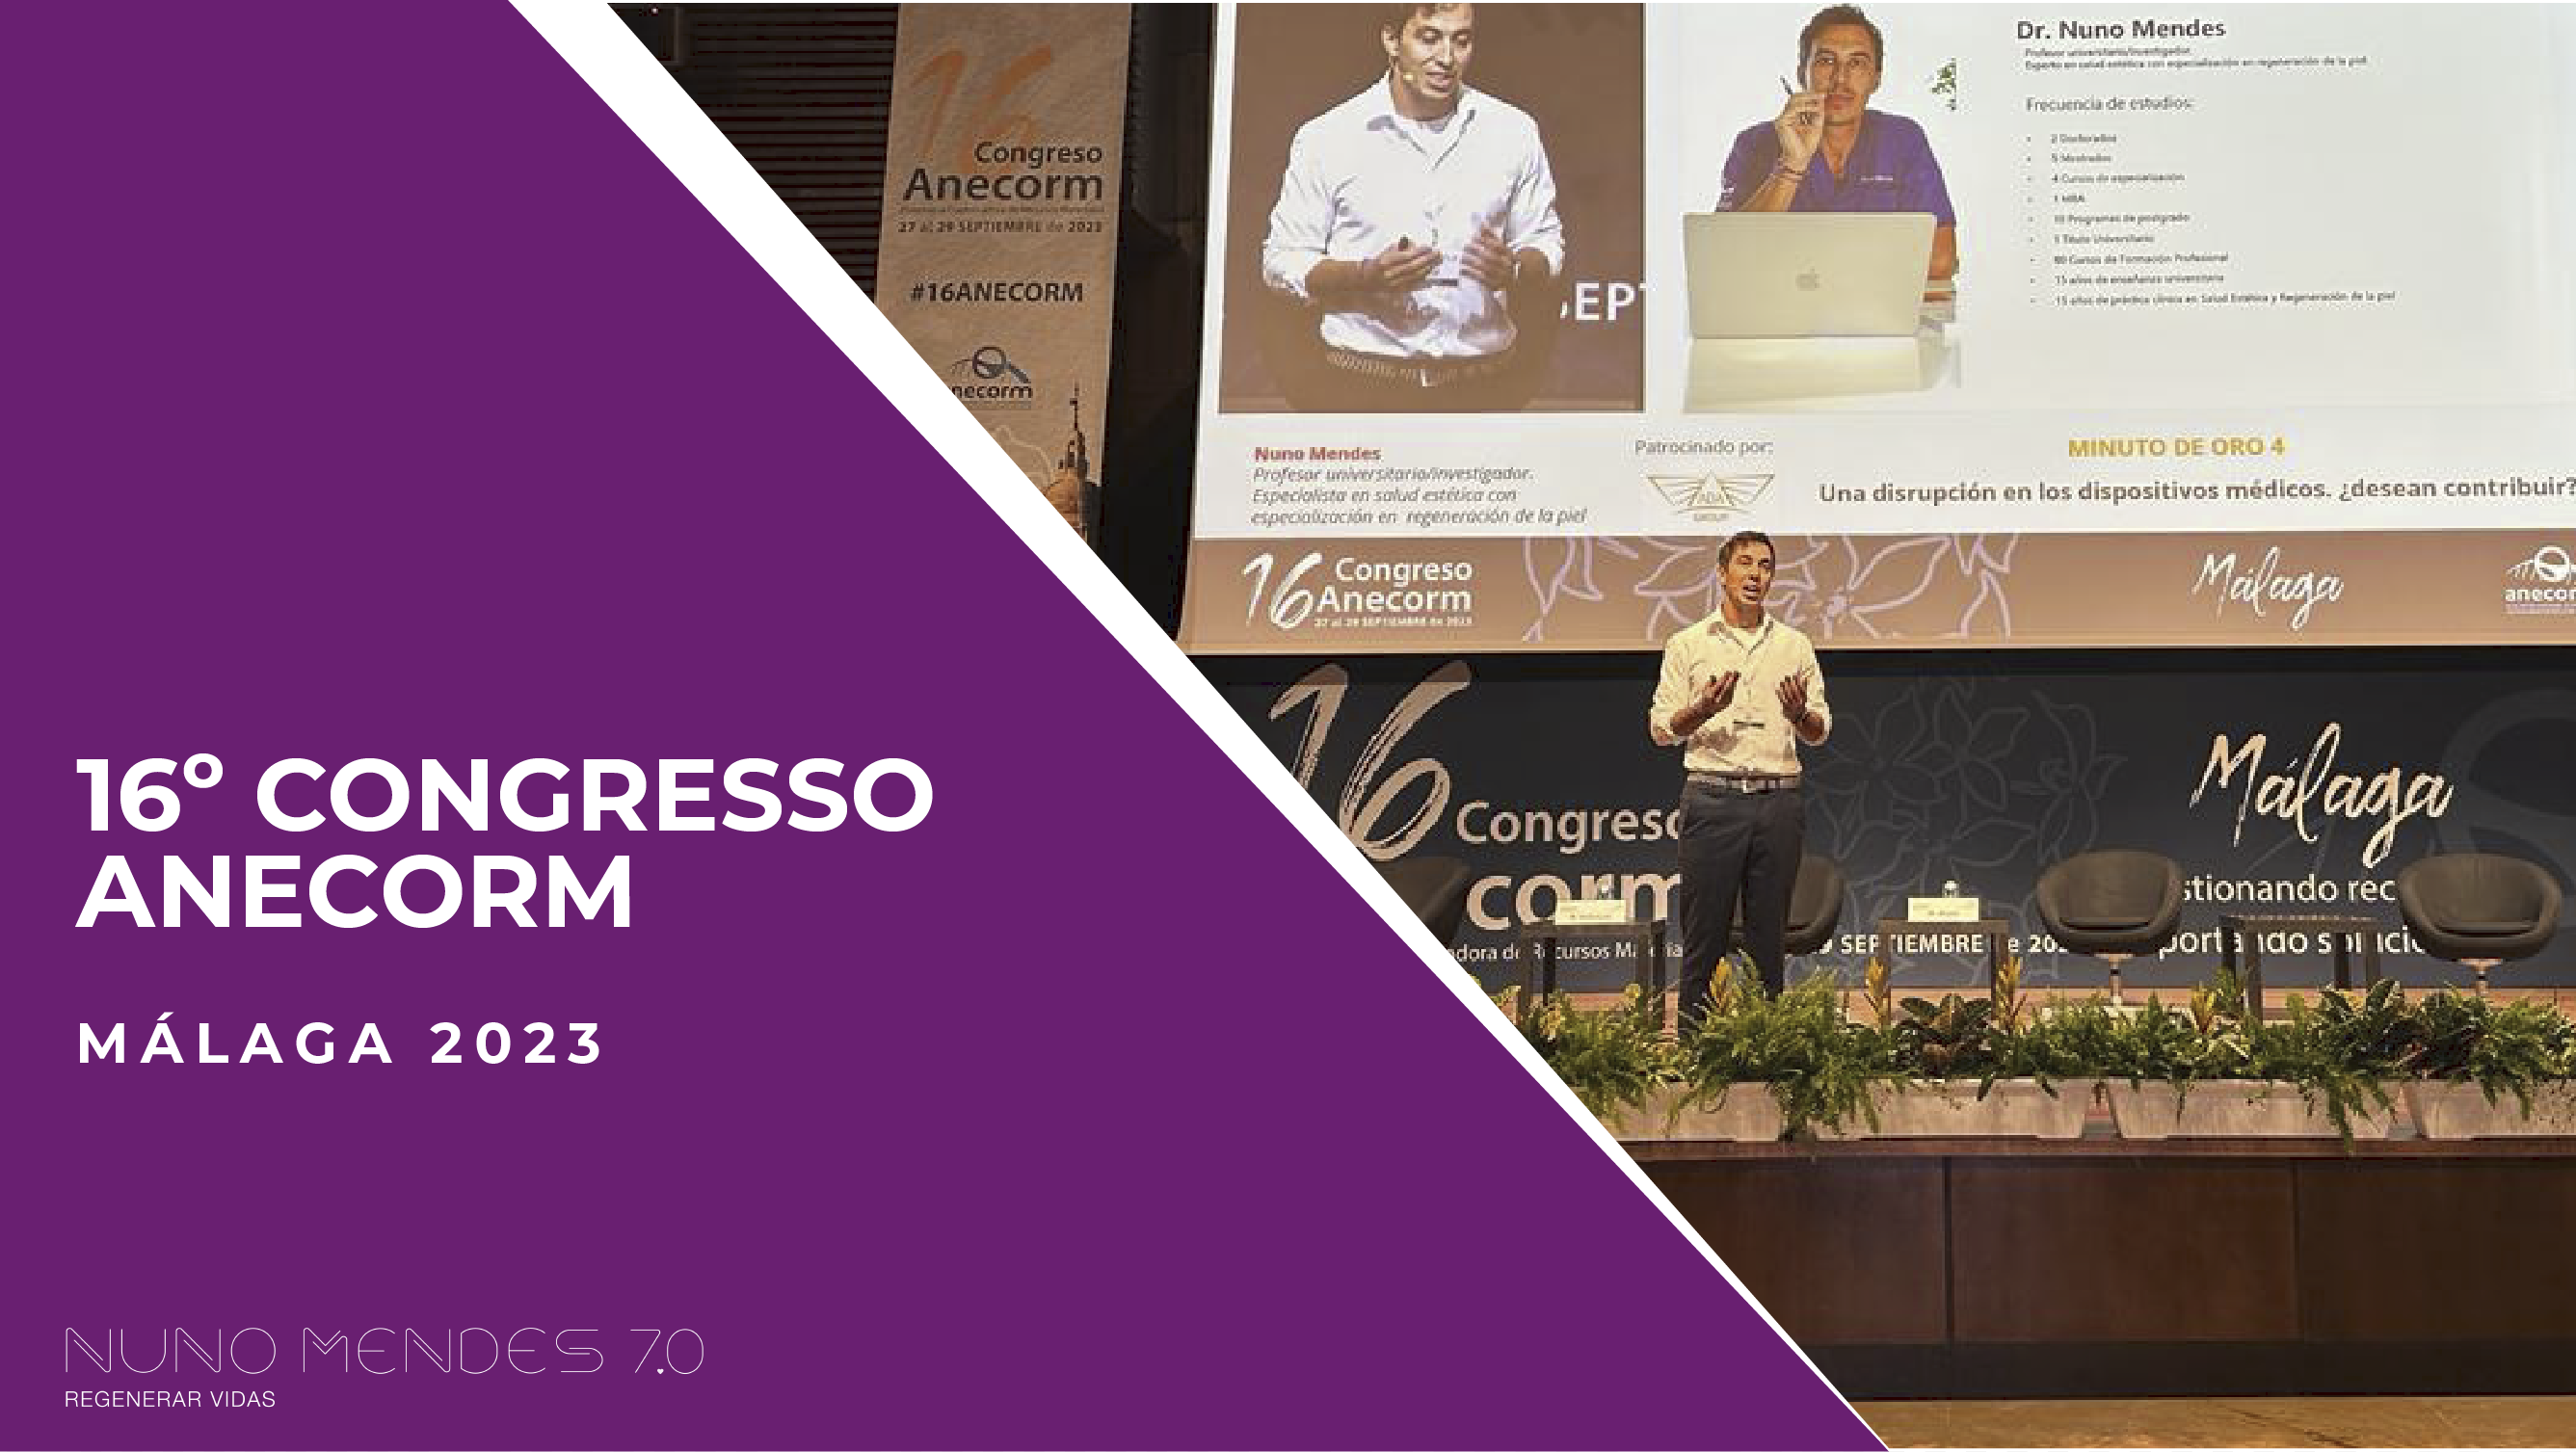 16º Congresso Anecorm – Málaga 2023